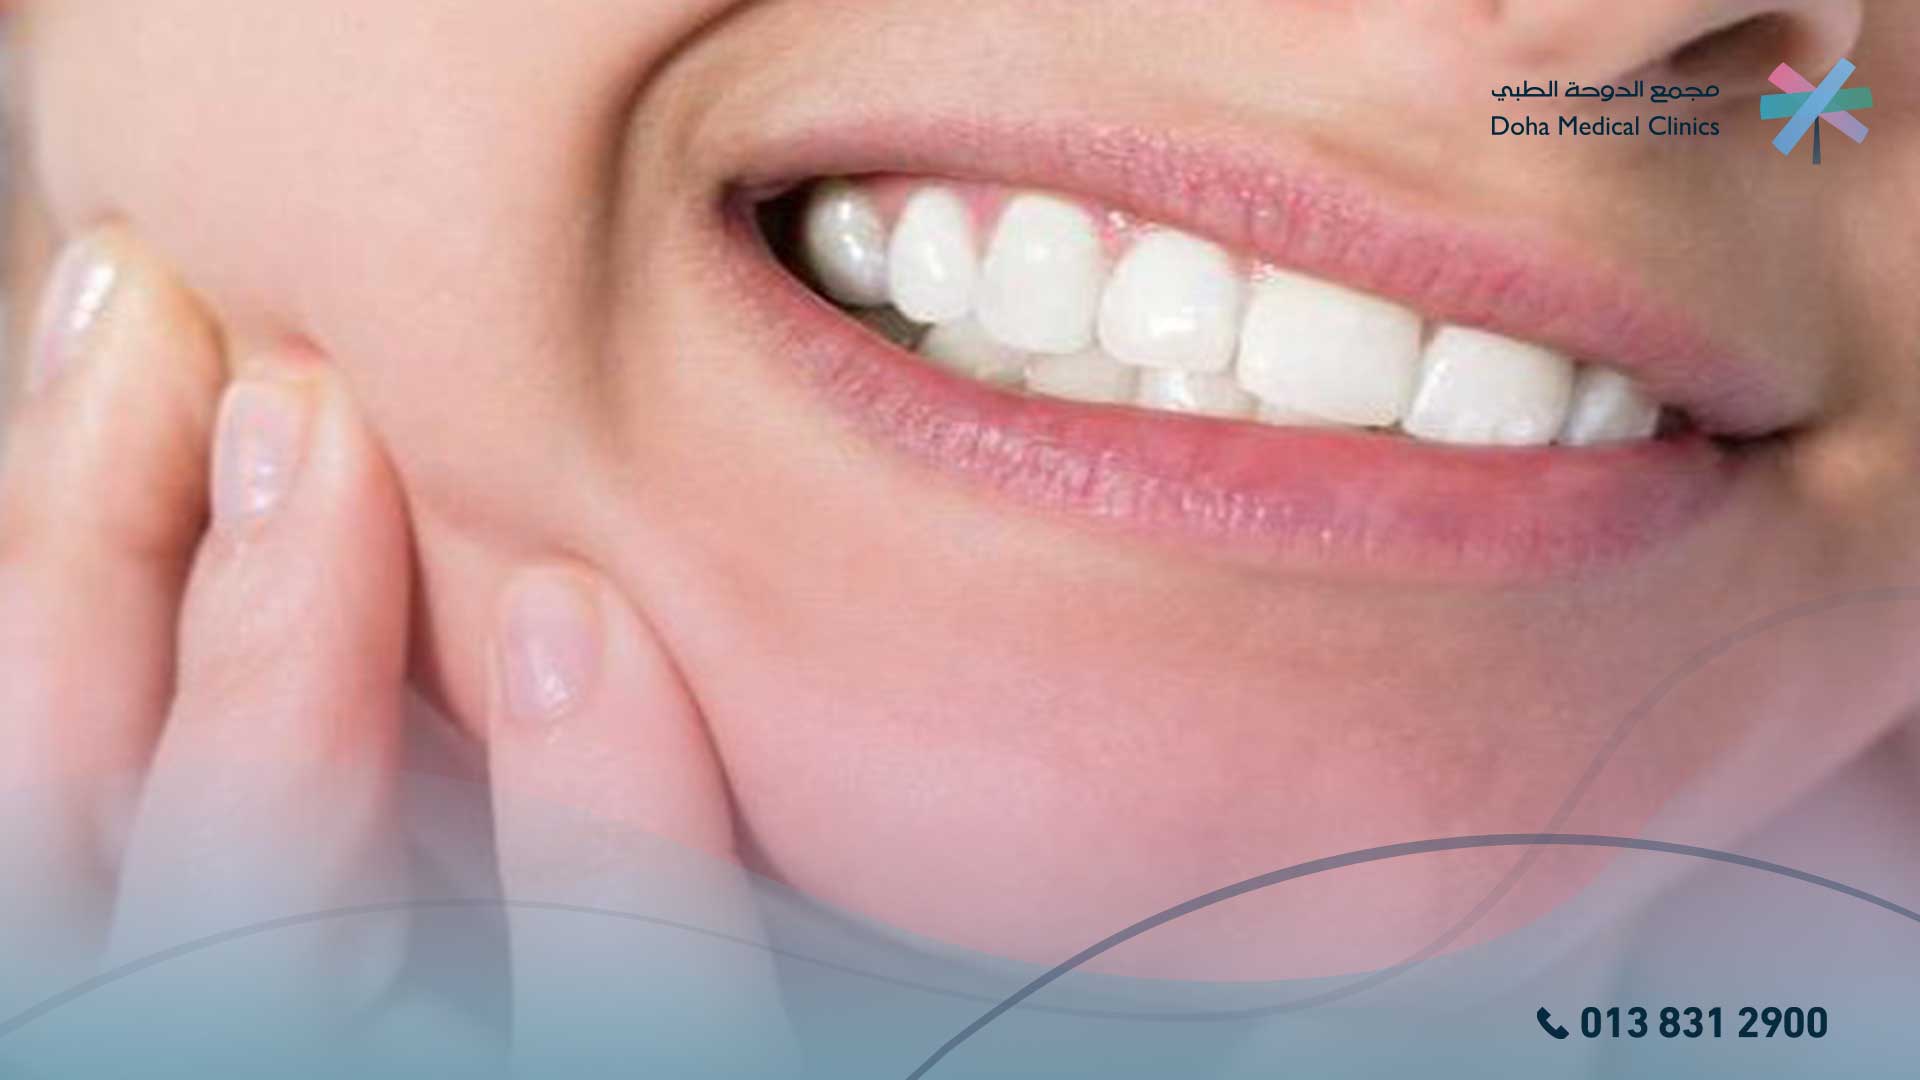 سبب نزول الدم من الأسنان أثناء النوم